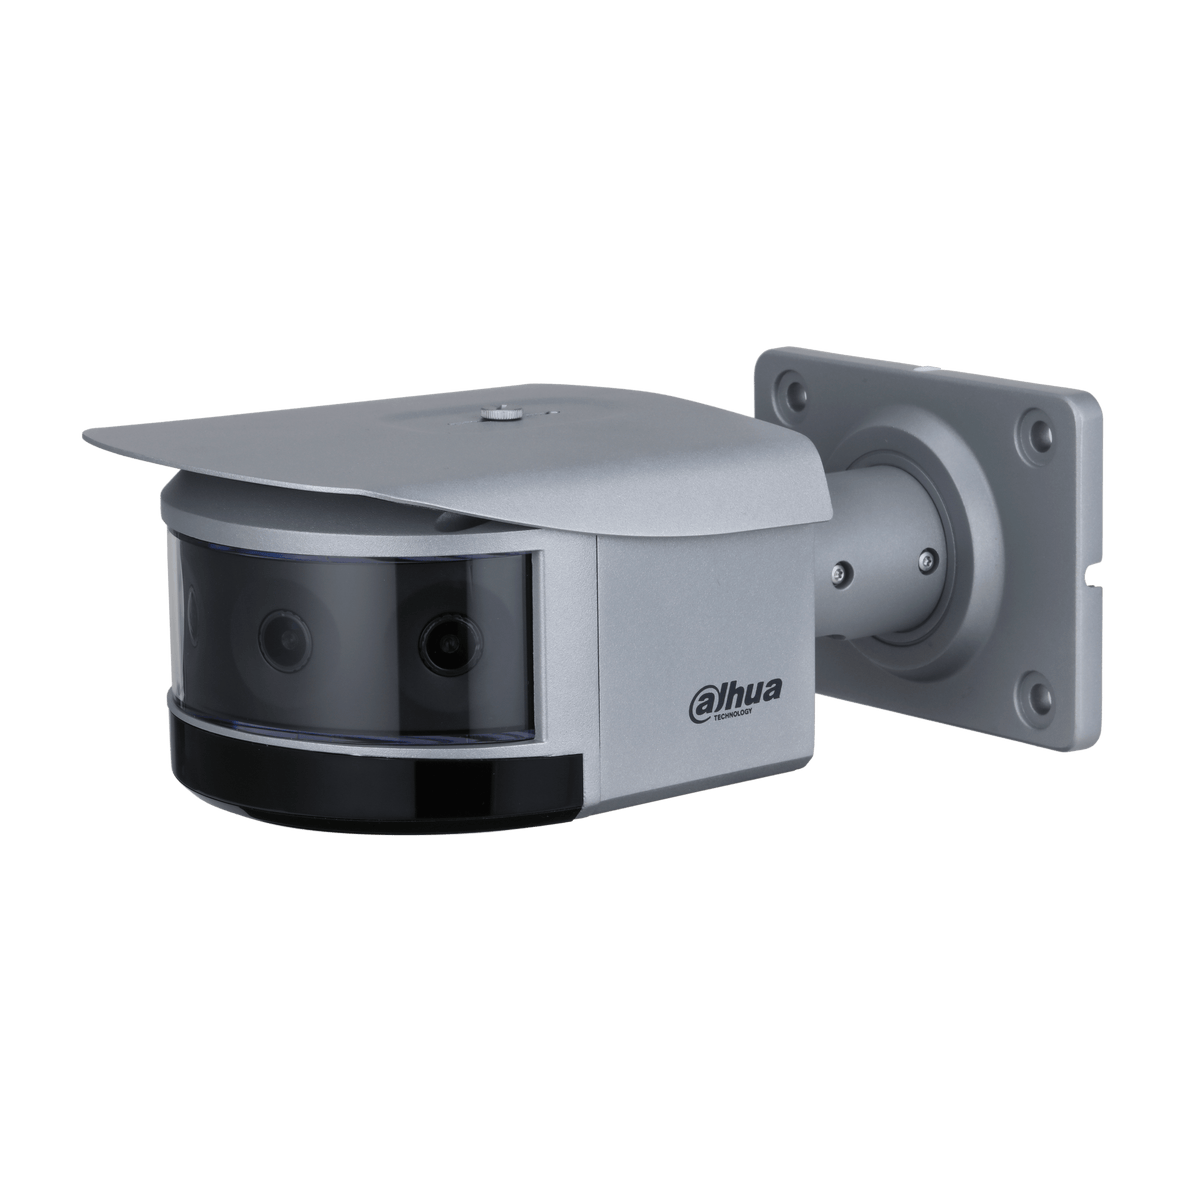 DAHUA IPC-PFW8840-A180 4×2MP WizMind Multi-Sensor Panoramic Network IR Bullet Camera